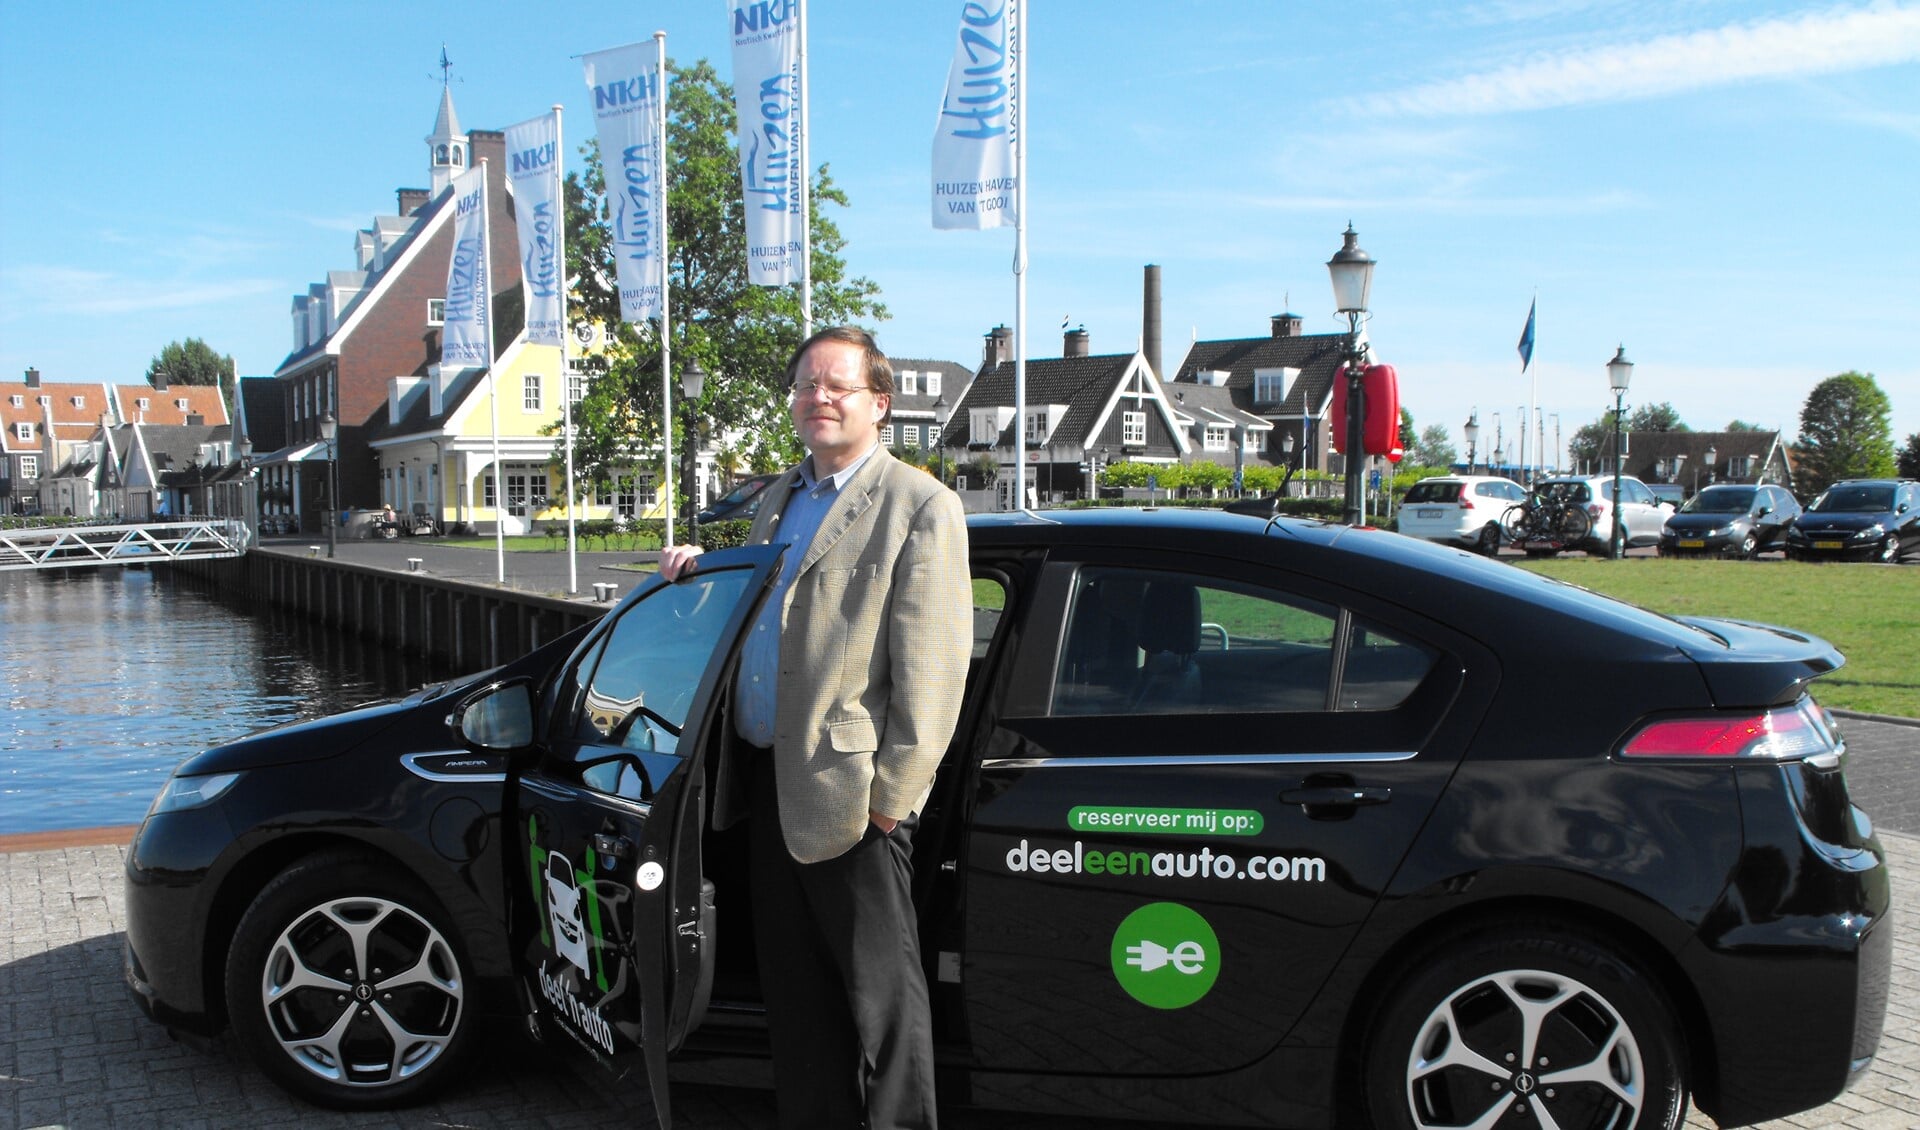 Rob Bource, hier met een deelauto op de foto, heeft uit passie voor duurzaamheid en vervoer E-motion georganiseerd.